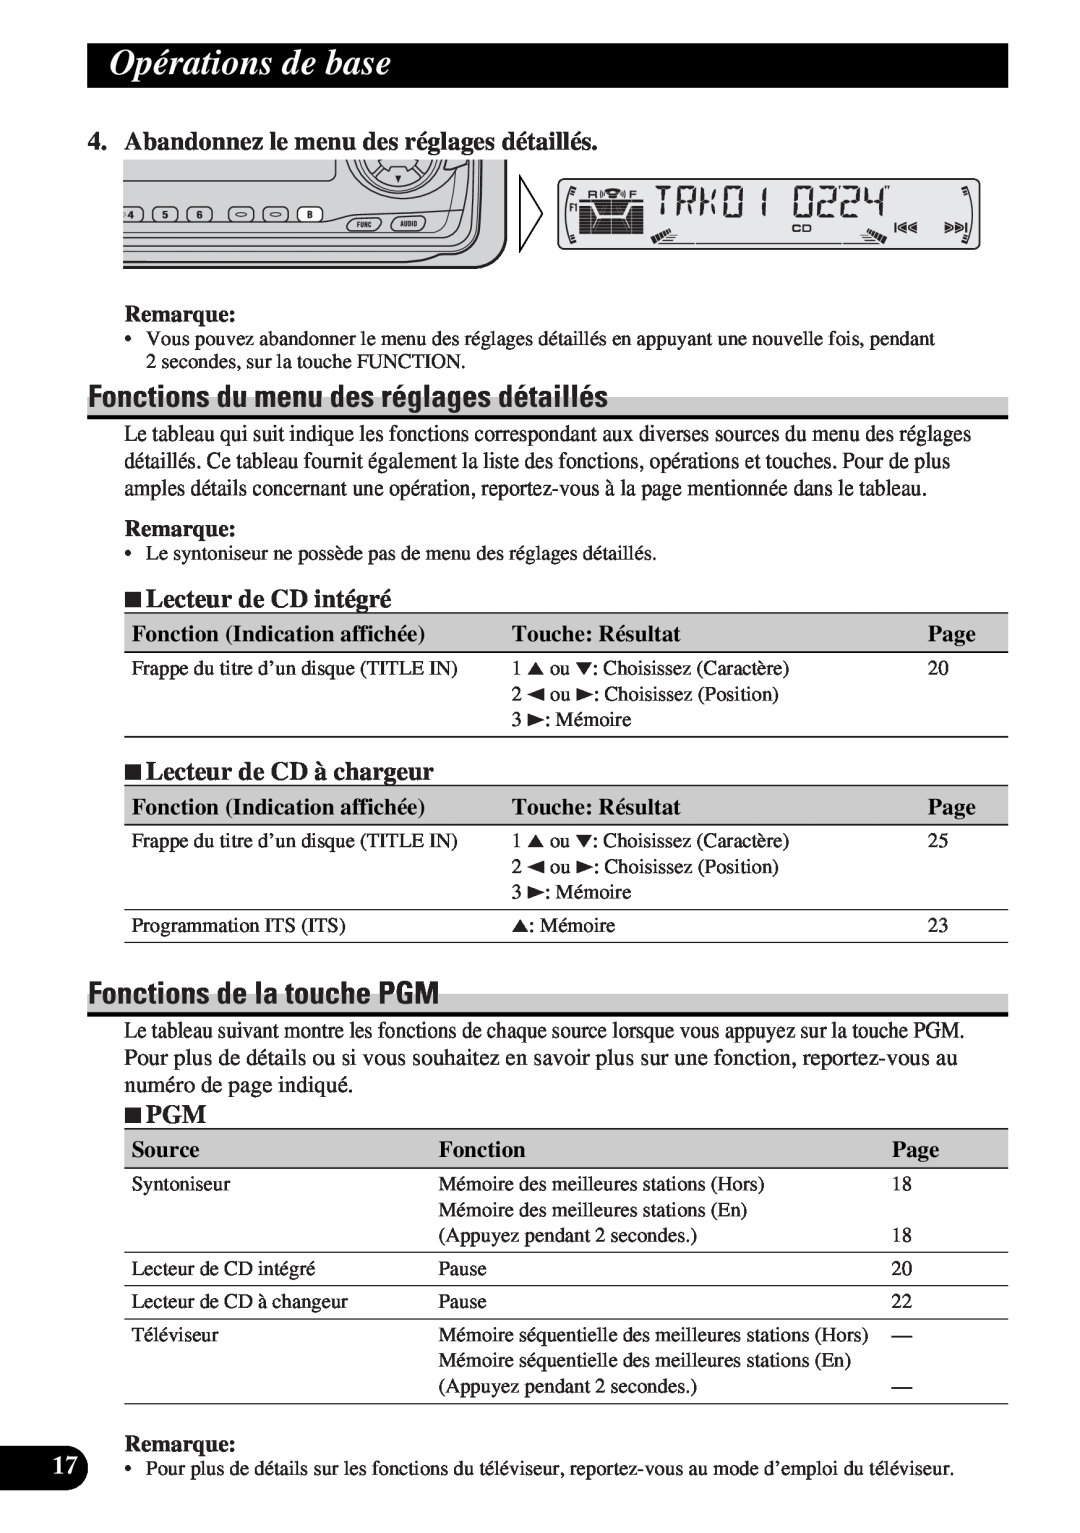 Pioneer DEH-P43 Fonctions du menu des réglages détaillés, Fonctions de la touche PGM, Opérations de base, 7PGM, Remarque 